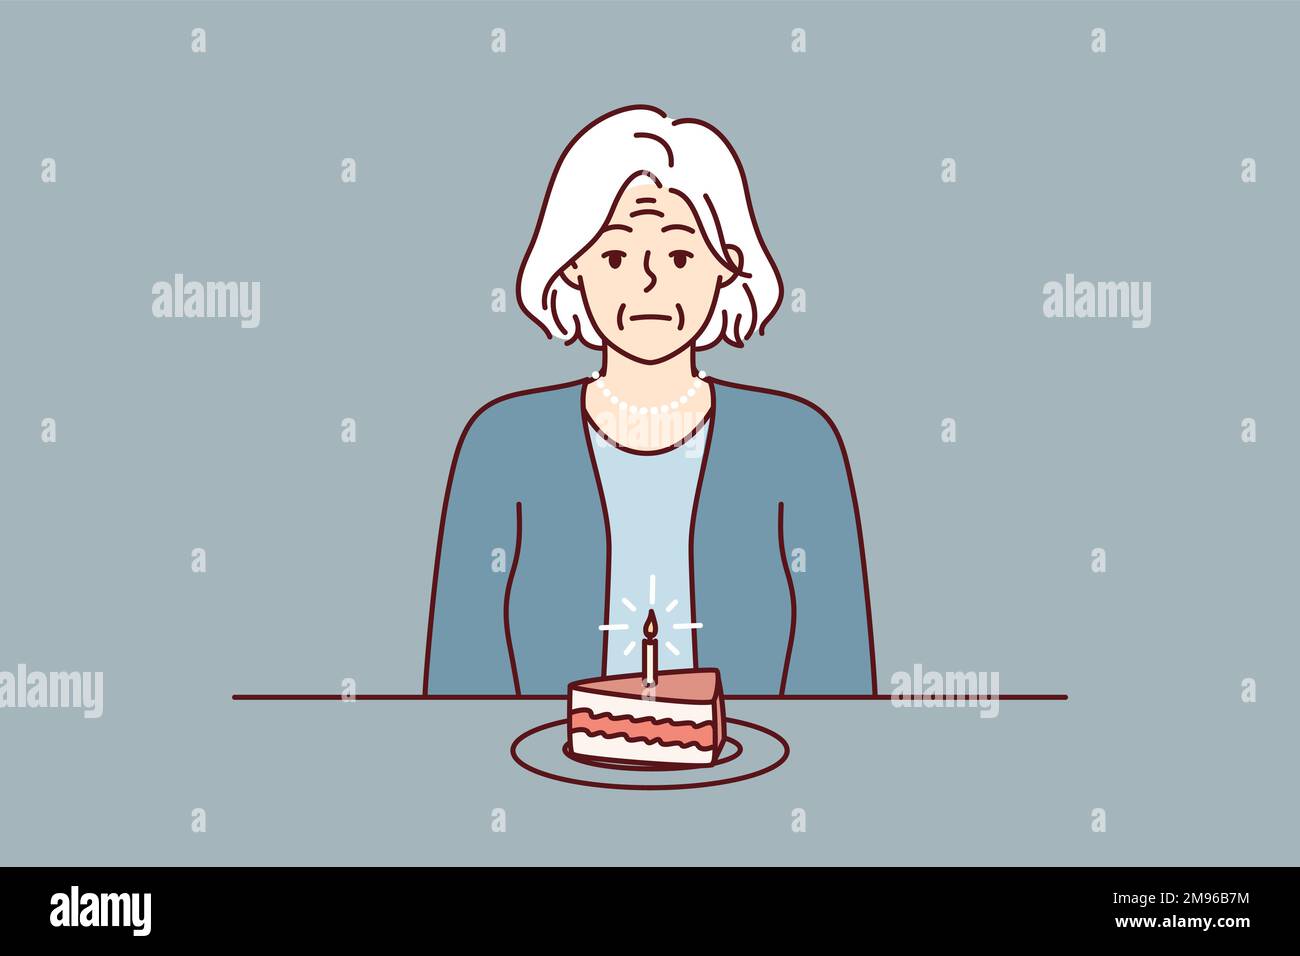 Eine einsame ältere Frau sitzt am Tisch mit einem Stück Kuchen mit Kerze und leidet an der Abwesenheit von Verwandten und Freunden. Unglückliche Großmutter feiert Geburtstag allein und braucht Unterstützung. Flaches Vektorbild Stock Vektor